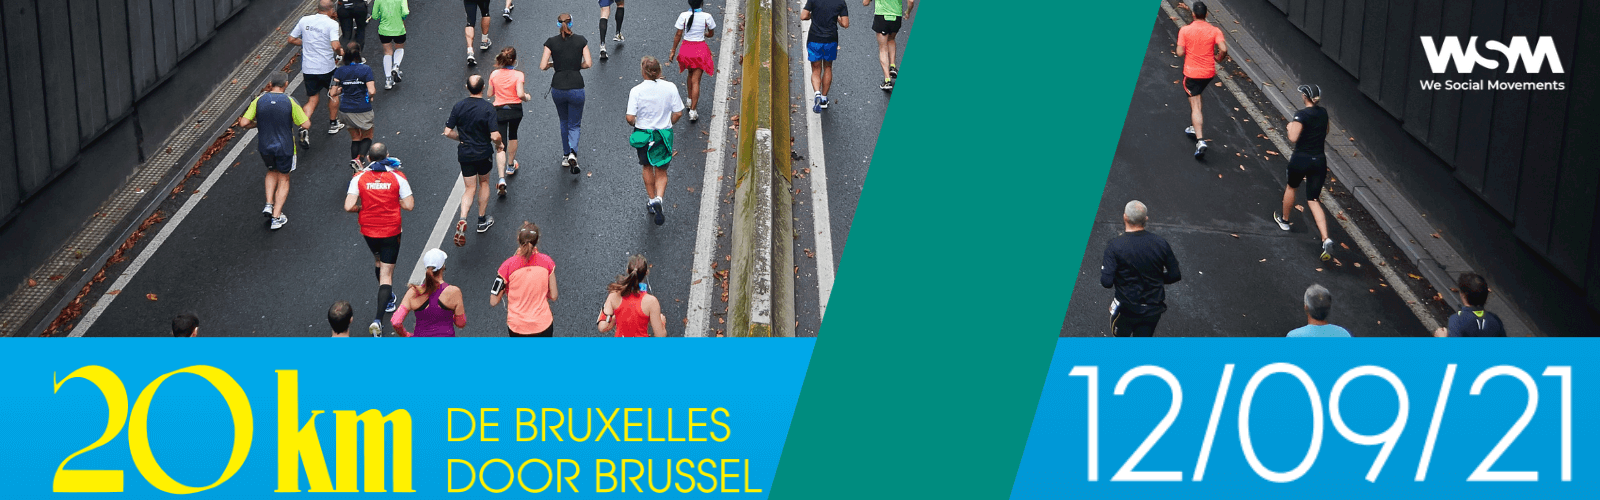 20 km de Bruxelles 2021